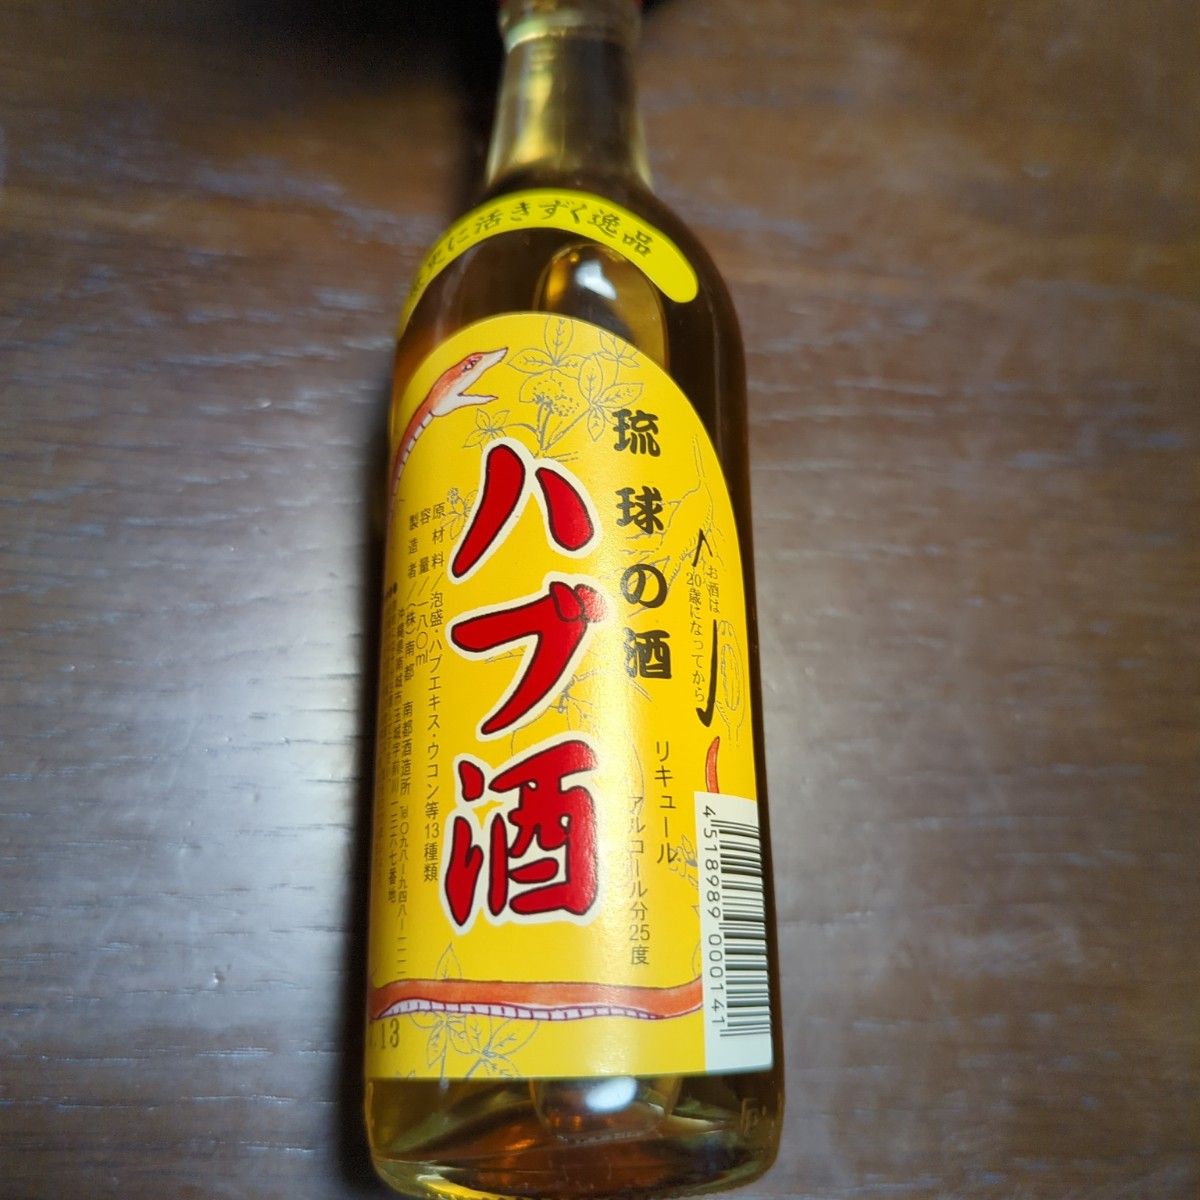 ハブ酒 約30年モノ うるま 未開封 8年 熟成 180ml 21度 強精酒 沖縄